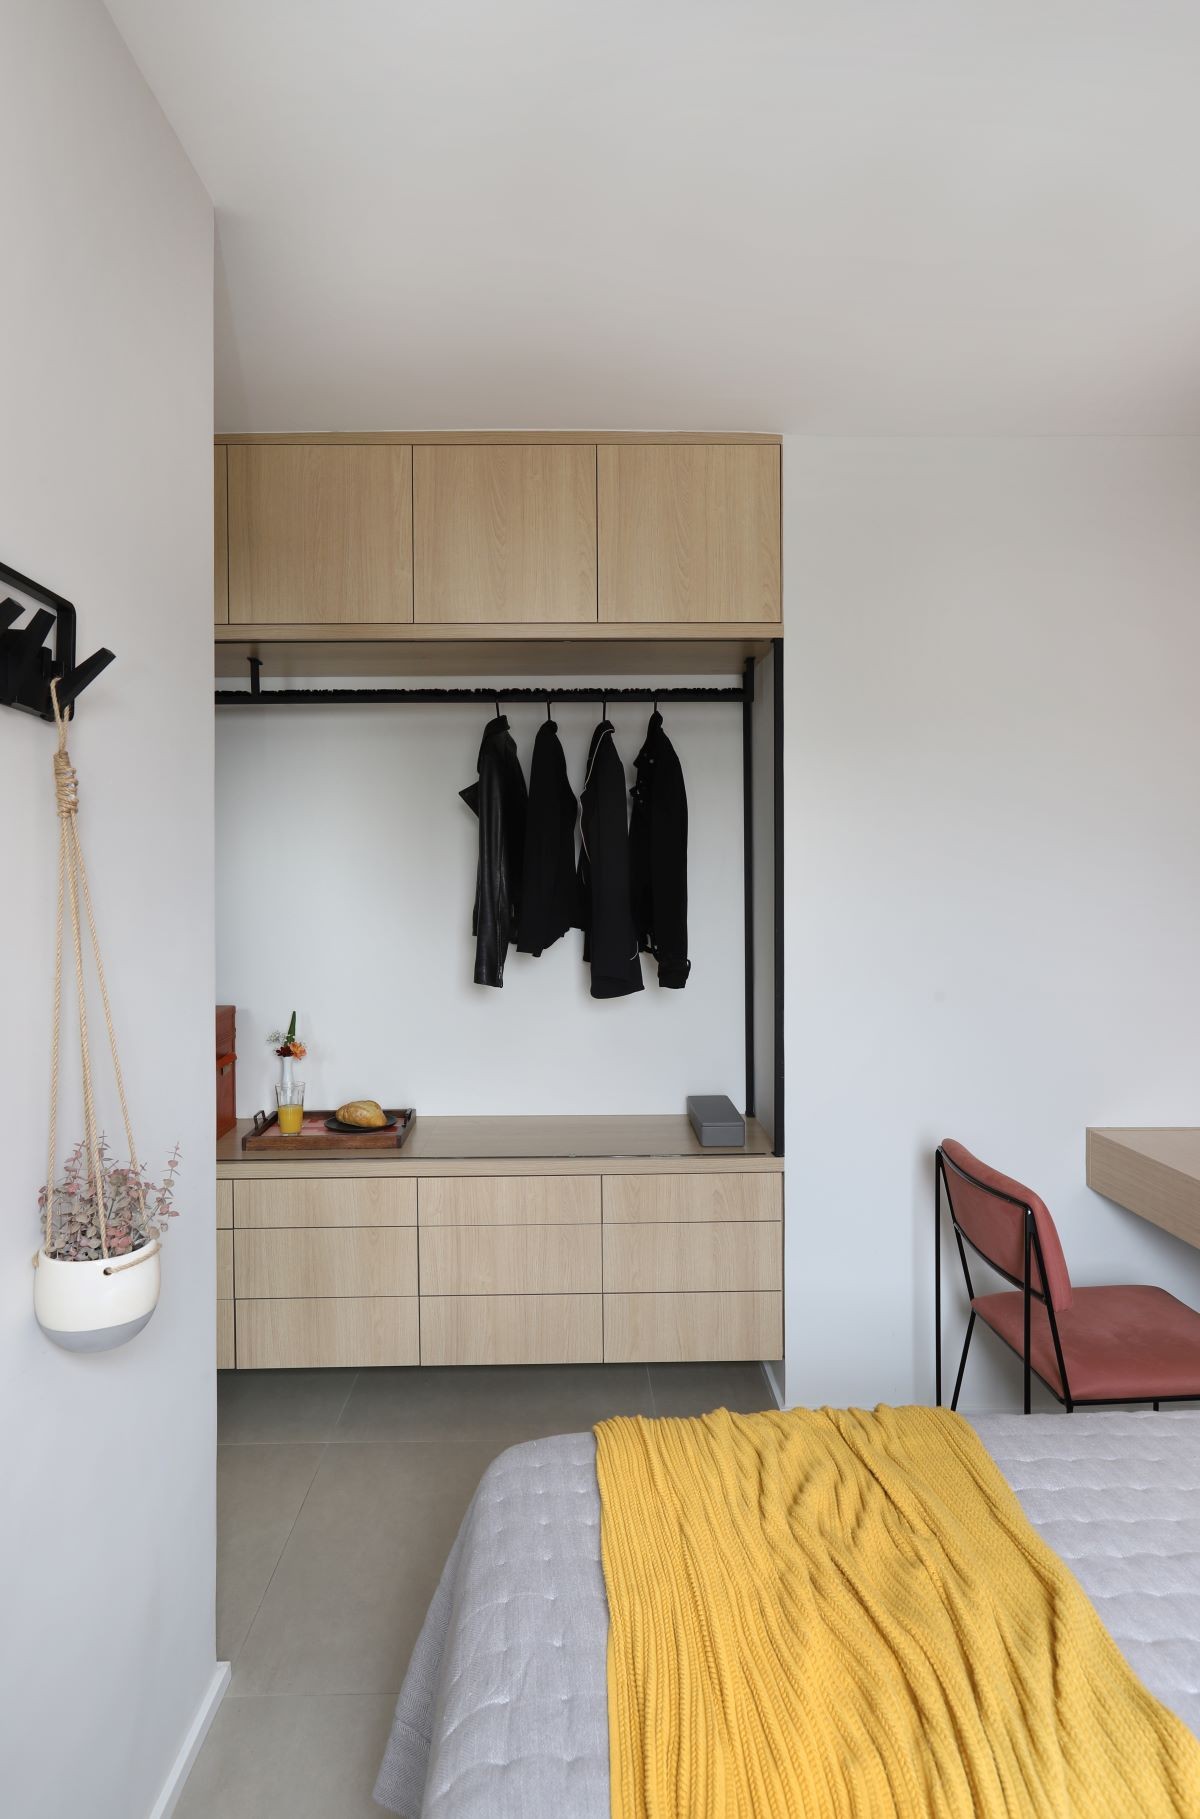 QUARTO | O armário do quarto de casal combina serralheria e marcenaria em tom mais claro (Foto: Divulgação / Mariana Orsi)